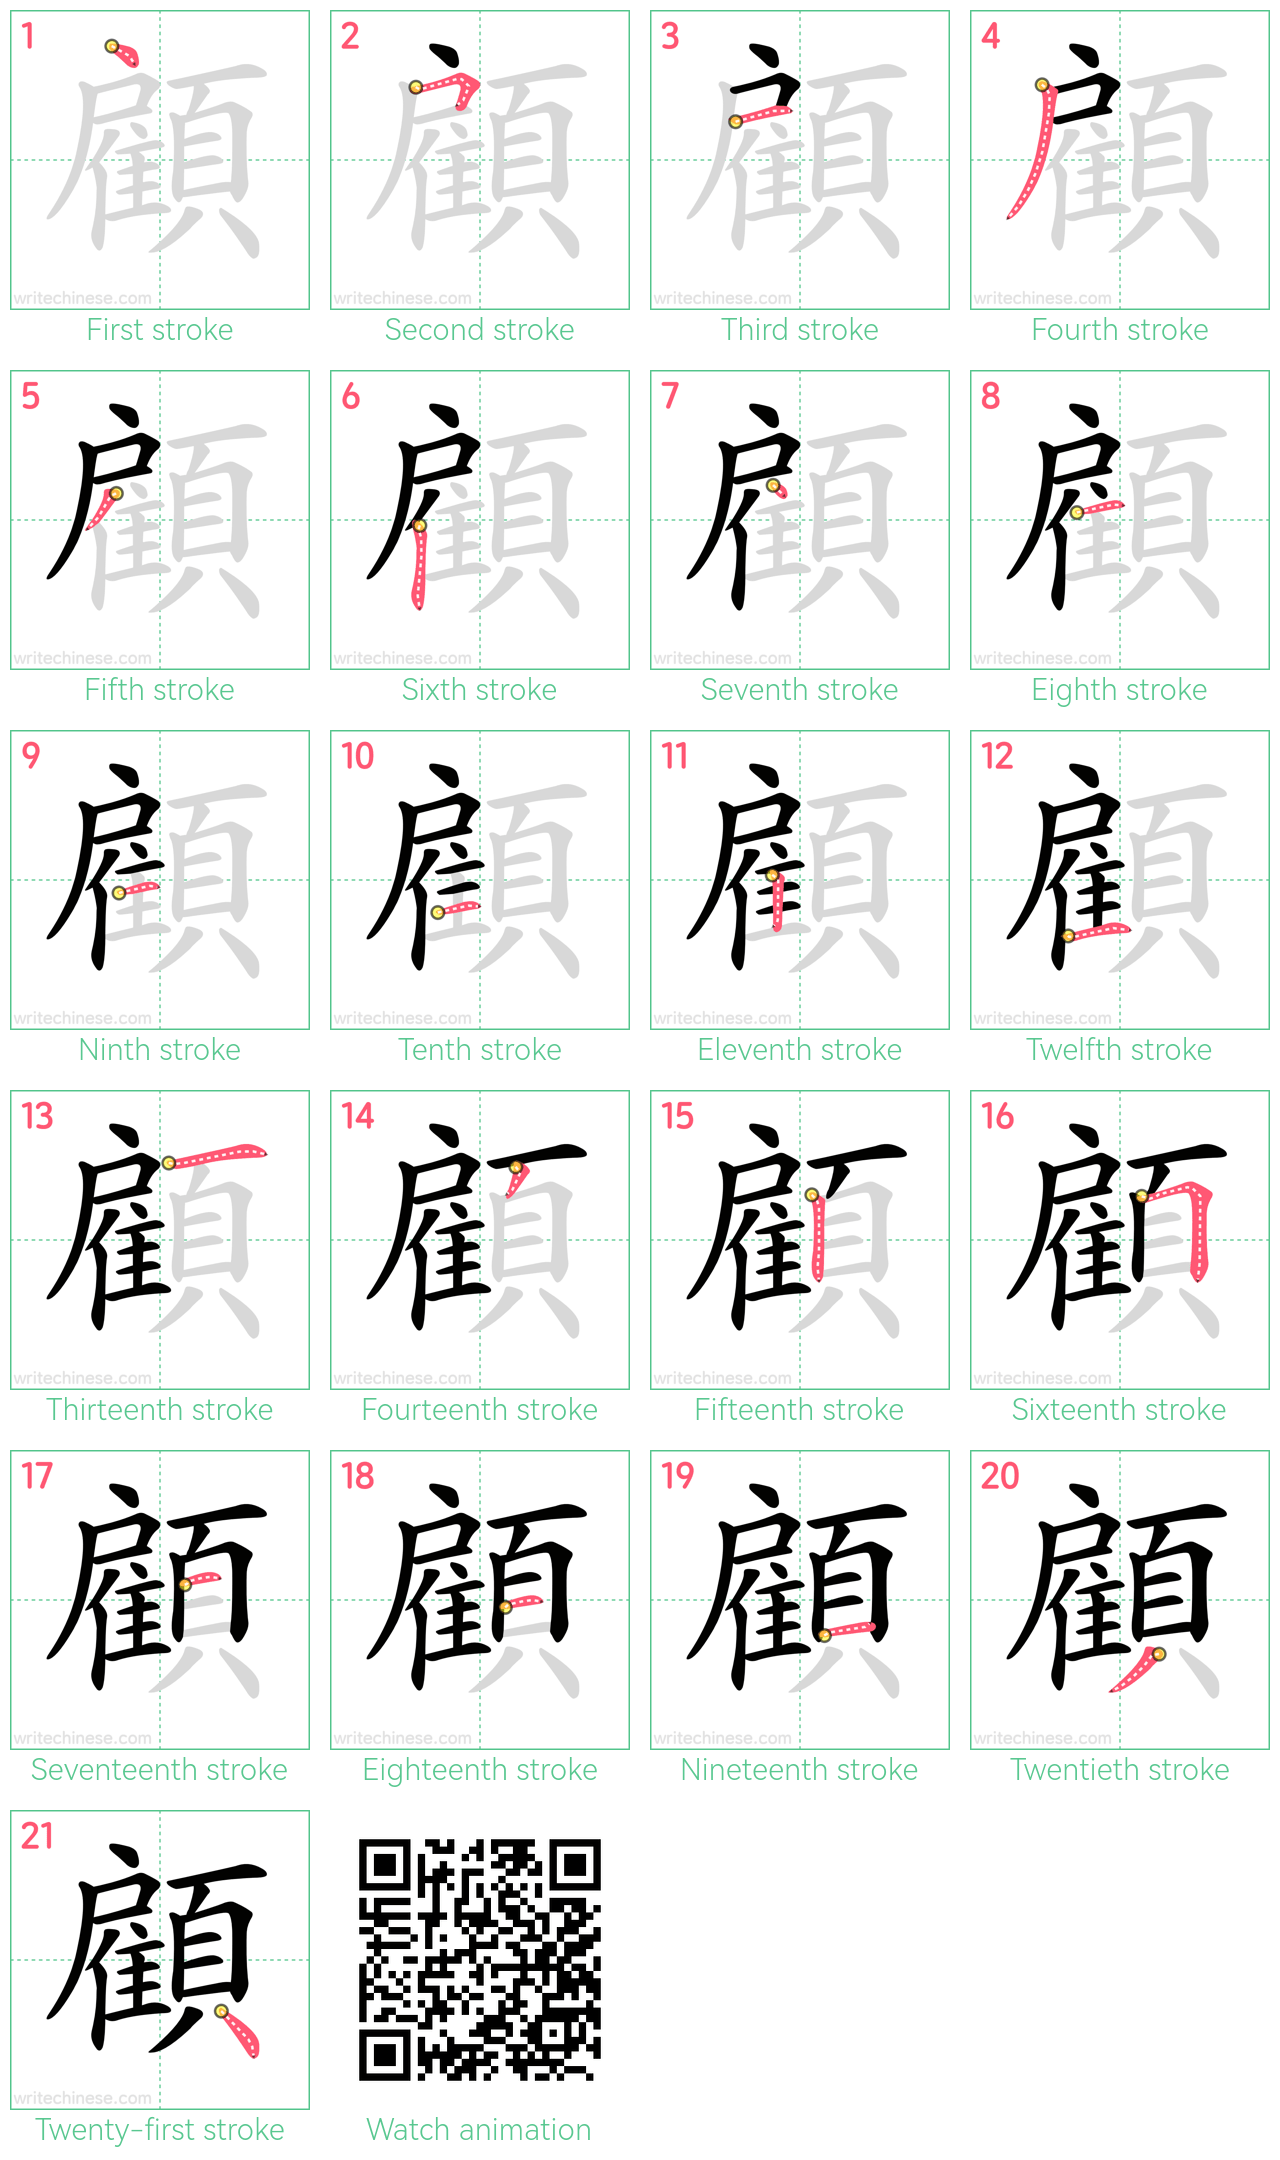 顧 step-by-step stroke order diagrams